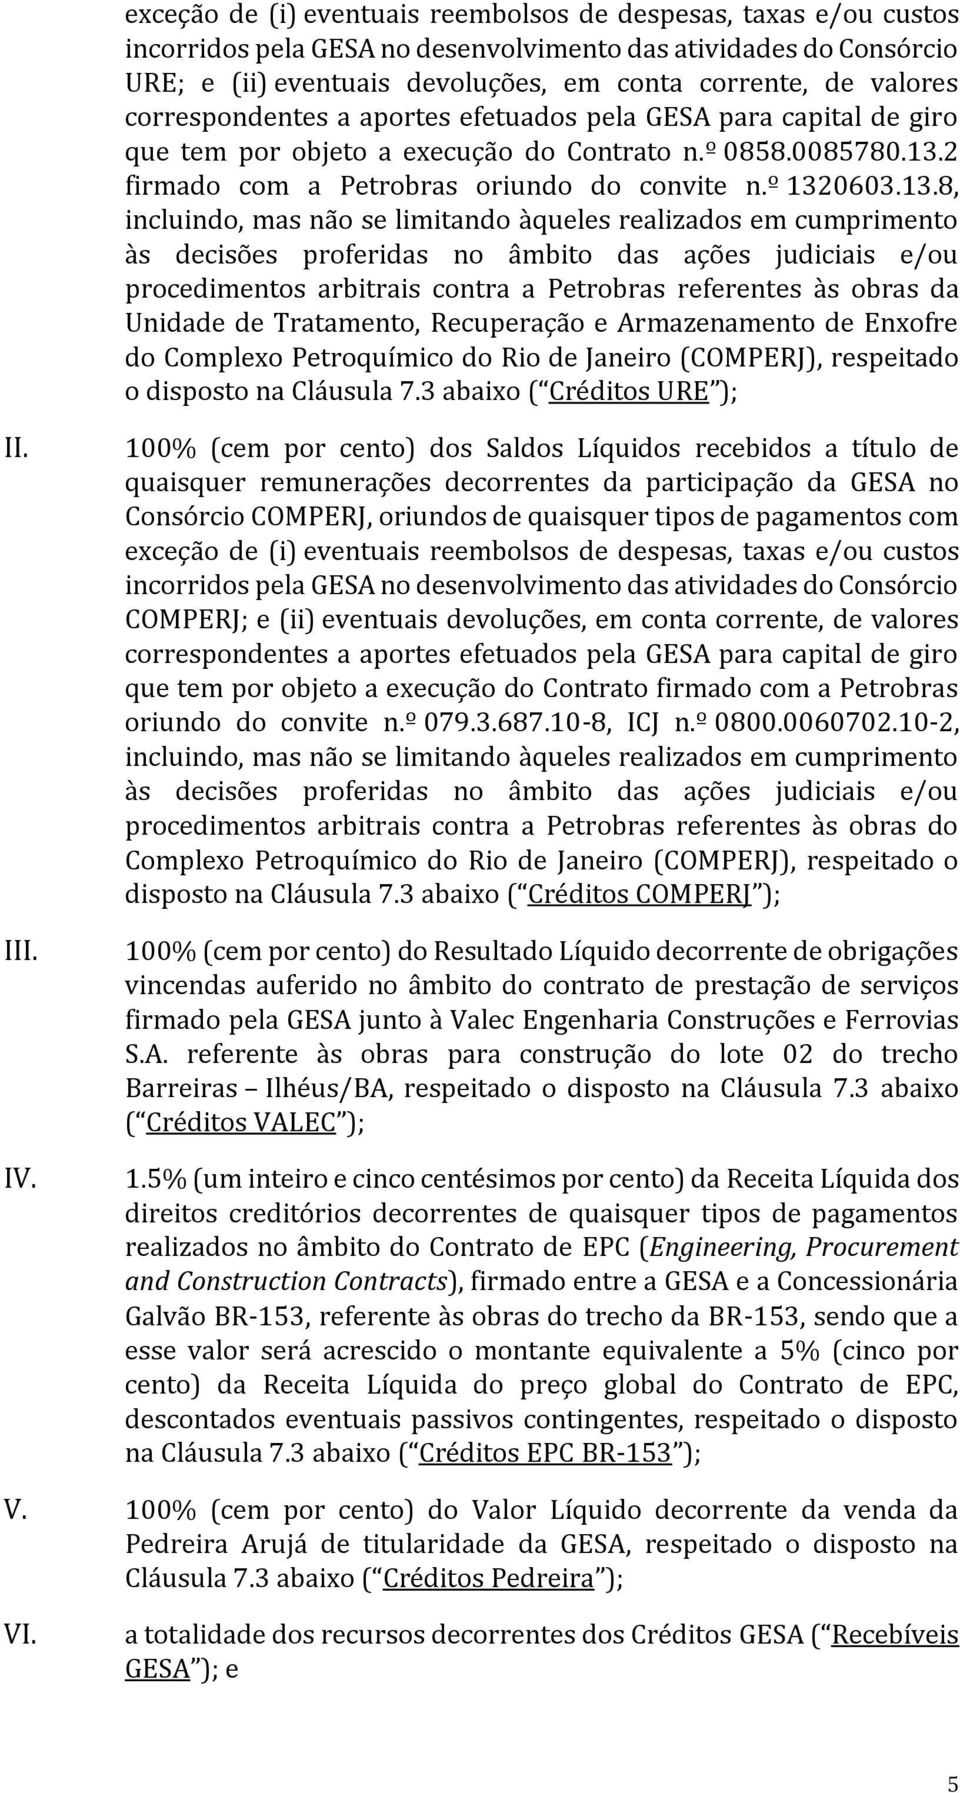 2 firmado com a Petrobras oriundo do convite n.º 132